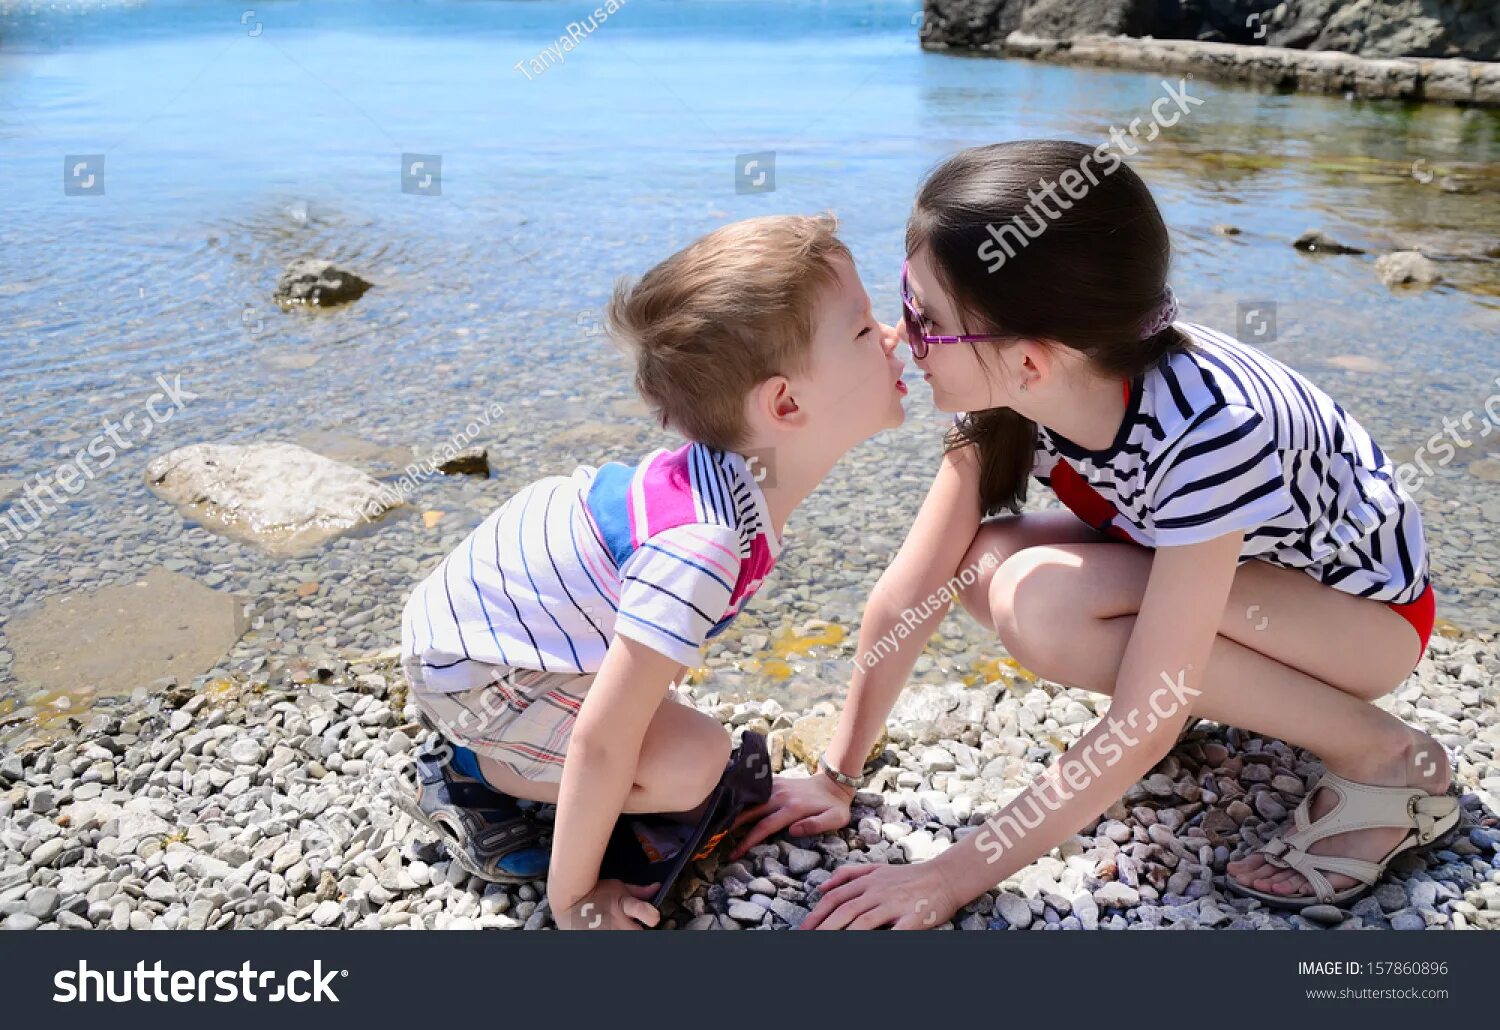 Лижет киску младшей сестры. Сестрички на пляжу лет 10. Маленький мальчик и девочка занимаются. Брат и сестра целуются. Поцелуй в 10 лет.